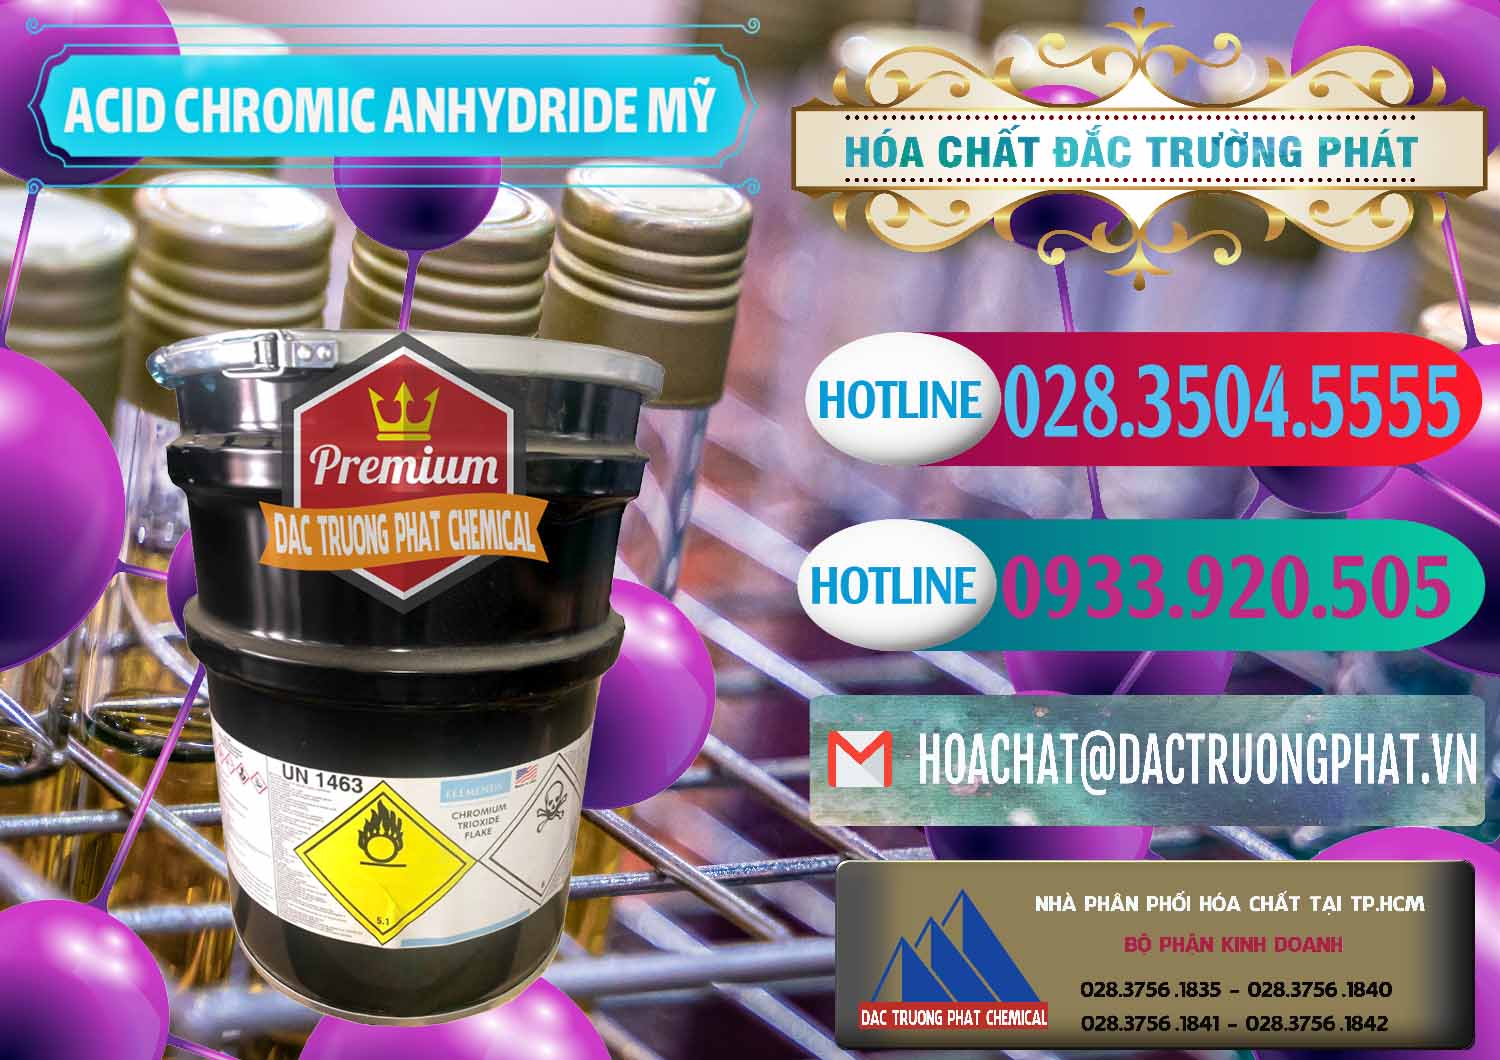 Đơn vị chuyên bán - cung ứng Acid Chromic Anhydride - Cromic CRO3 USA Mỹ - 0364 - Nhập khẩu _ cung cấp hóa chất tại TP.HCM - truongphat.vn